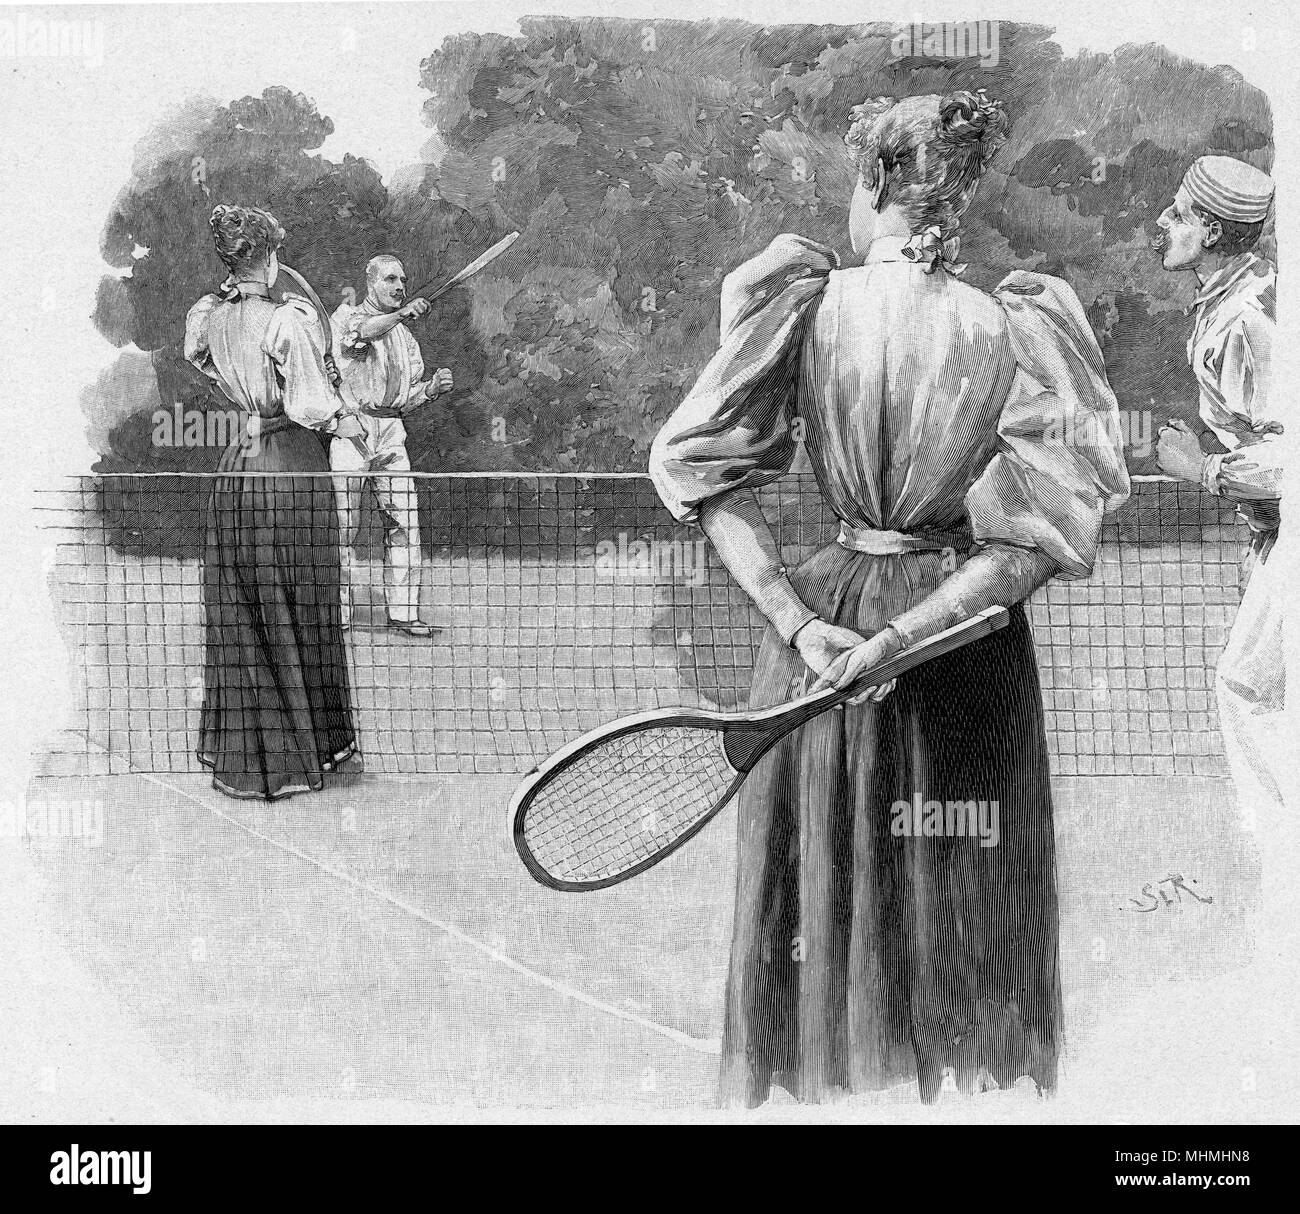 Un gioco di doppi misti data: 1894 Foto Stock